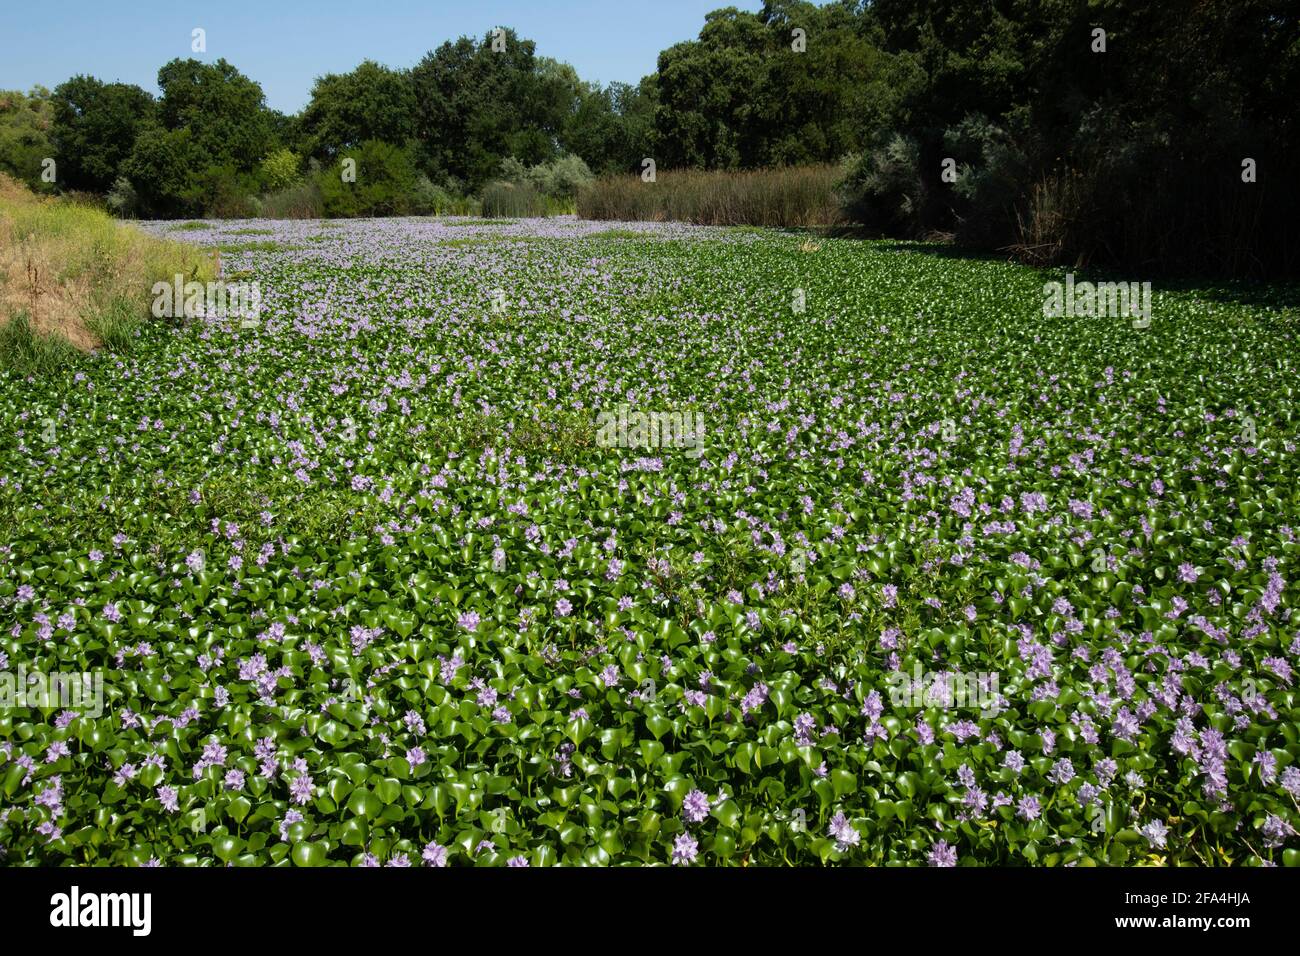 La jacinthe d'eau très envahissante, Eichhornia crassipes, détruit la diversité naturelle d'un chenal oxbow de la rivière San Joaquin. Banque D'Images